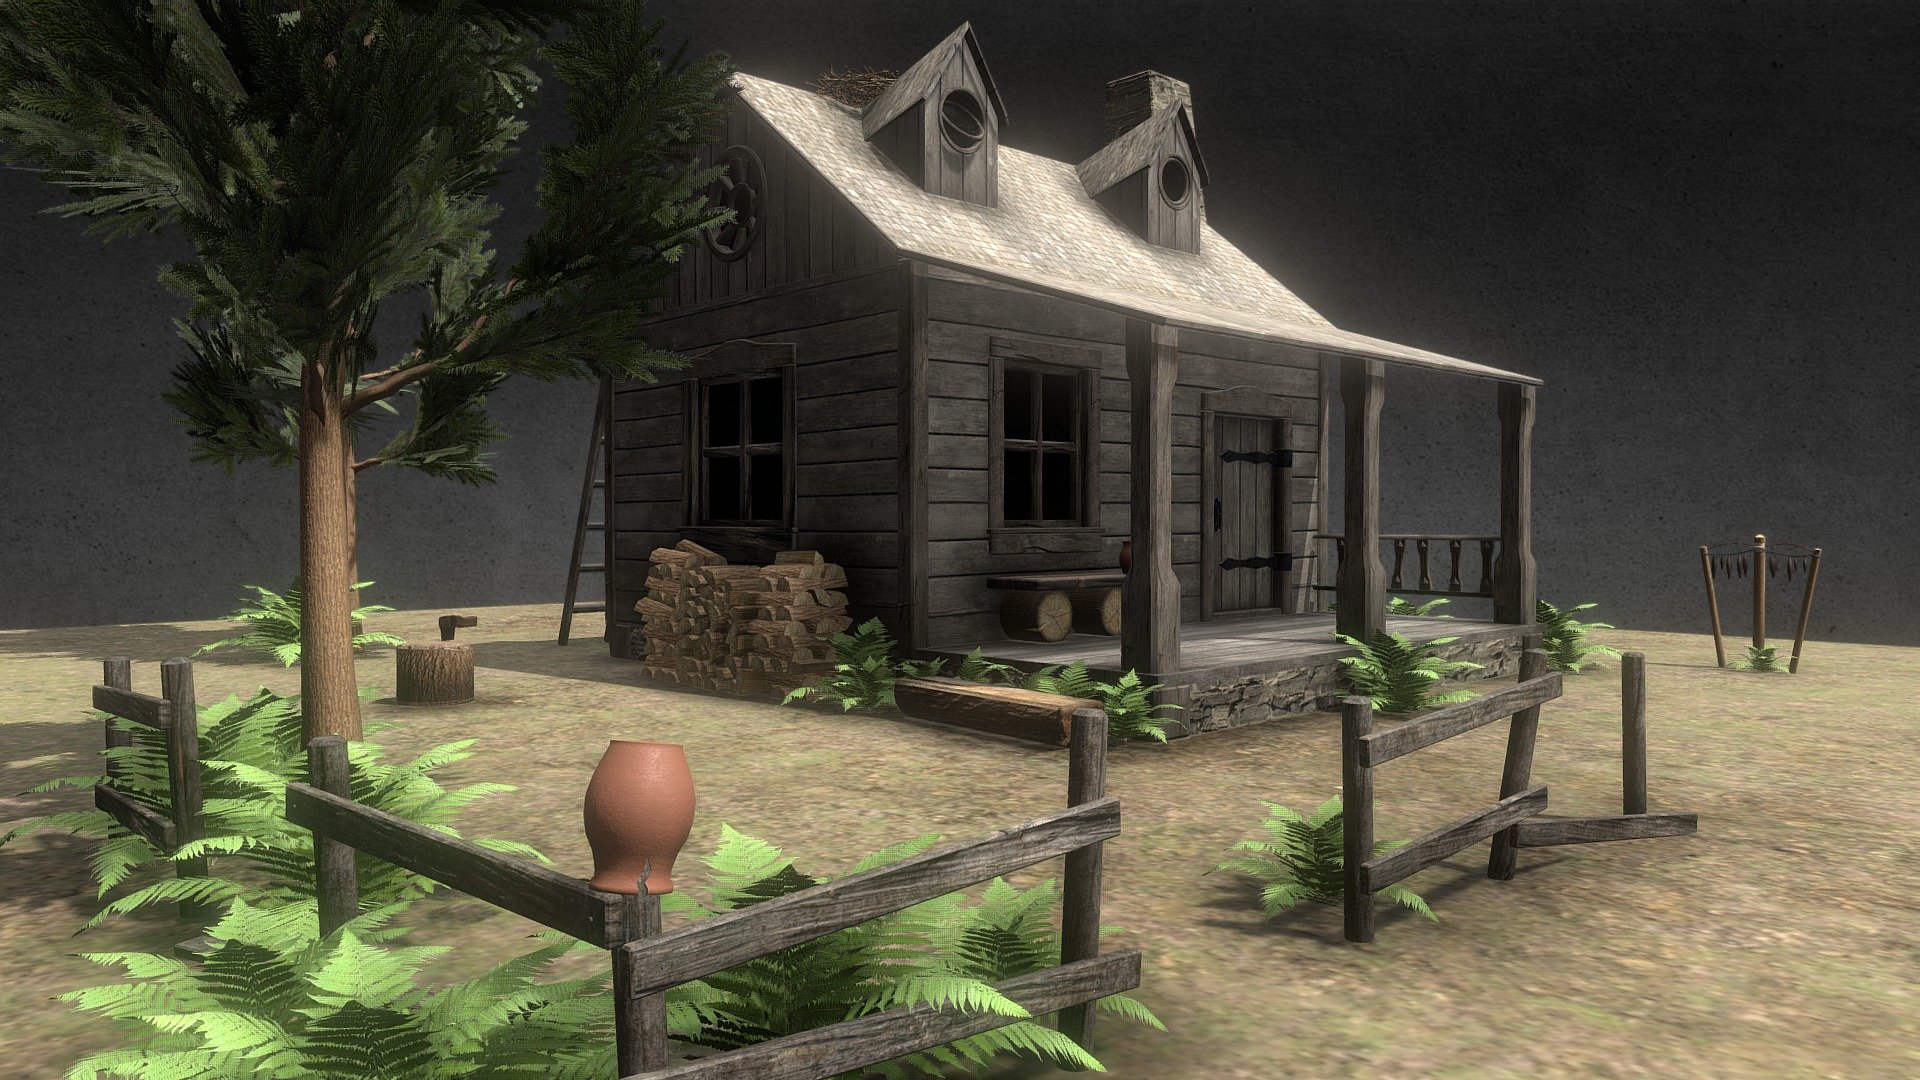 House in the woods - 3D model by Kris_de_Lioncourt 3d model